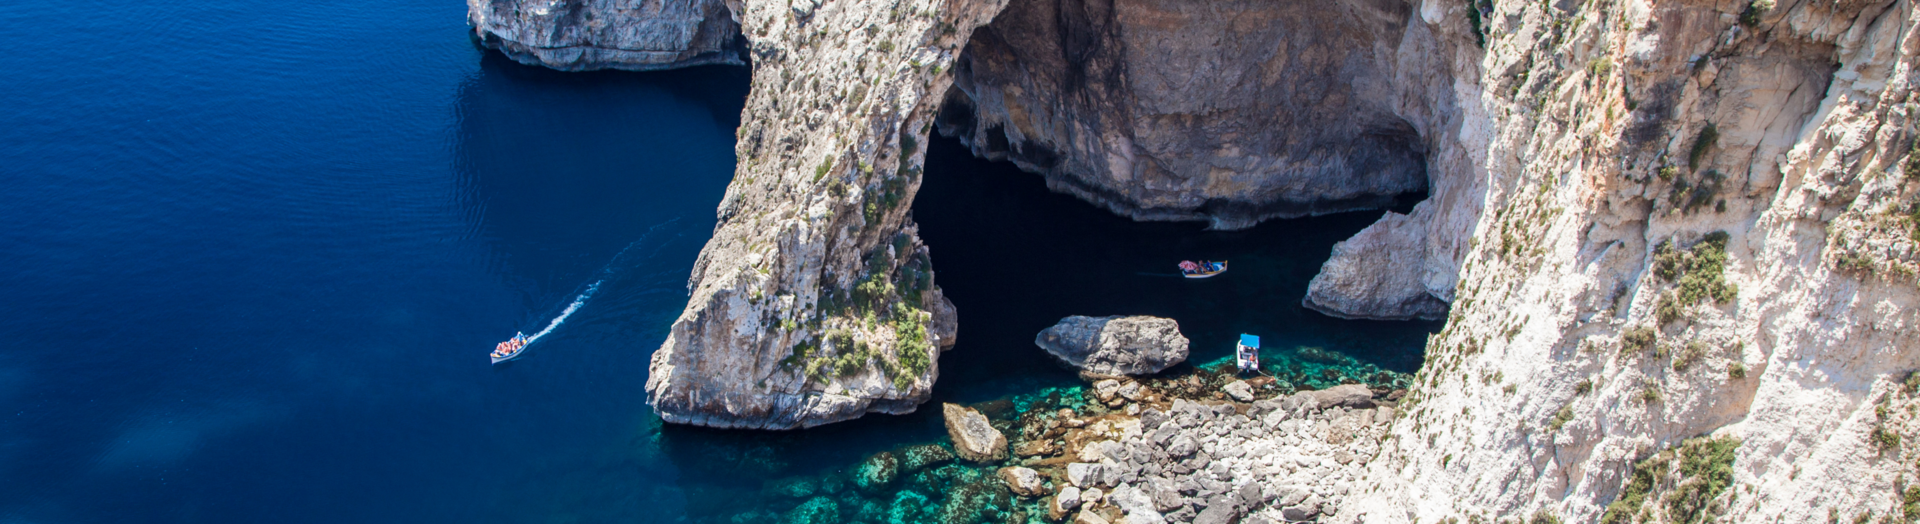 The Blue Grotto, Malta